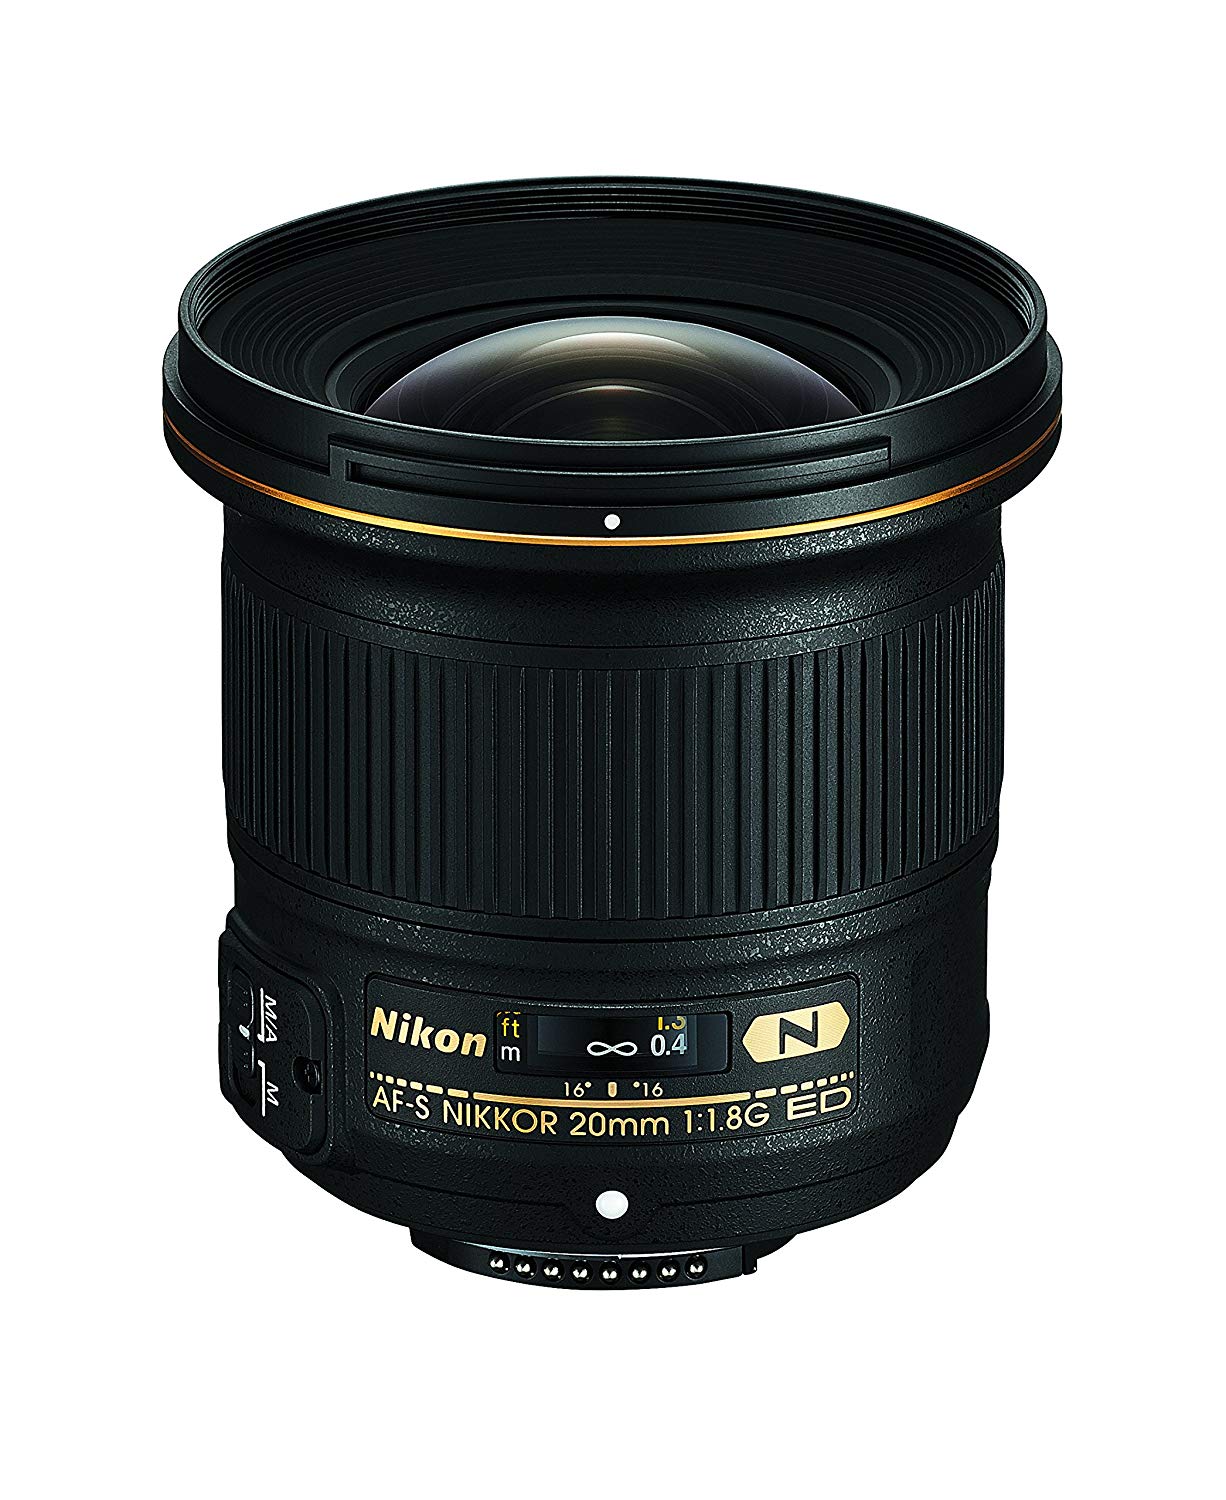 Nikon AF-S FX NIKKOR 20mm f / 1.8G ED 고정 렌즈 (DSLR 카메라 용 자동 초점 포함)